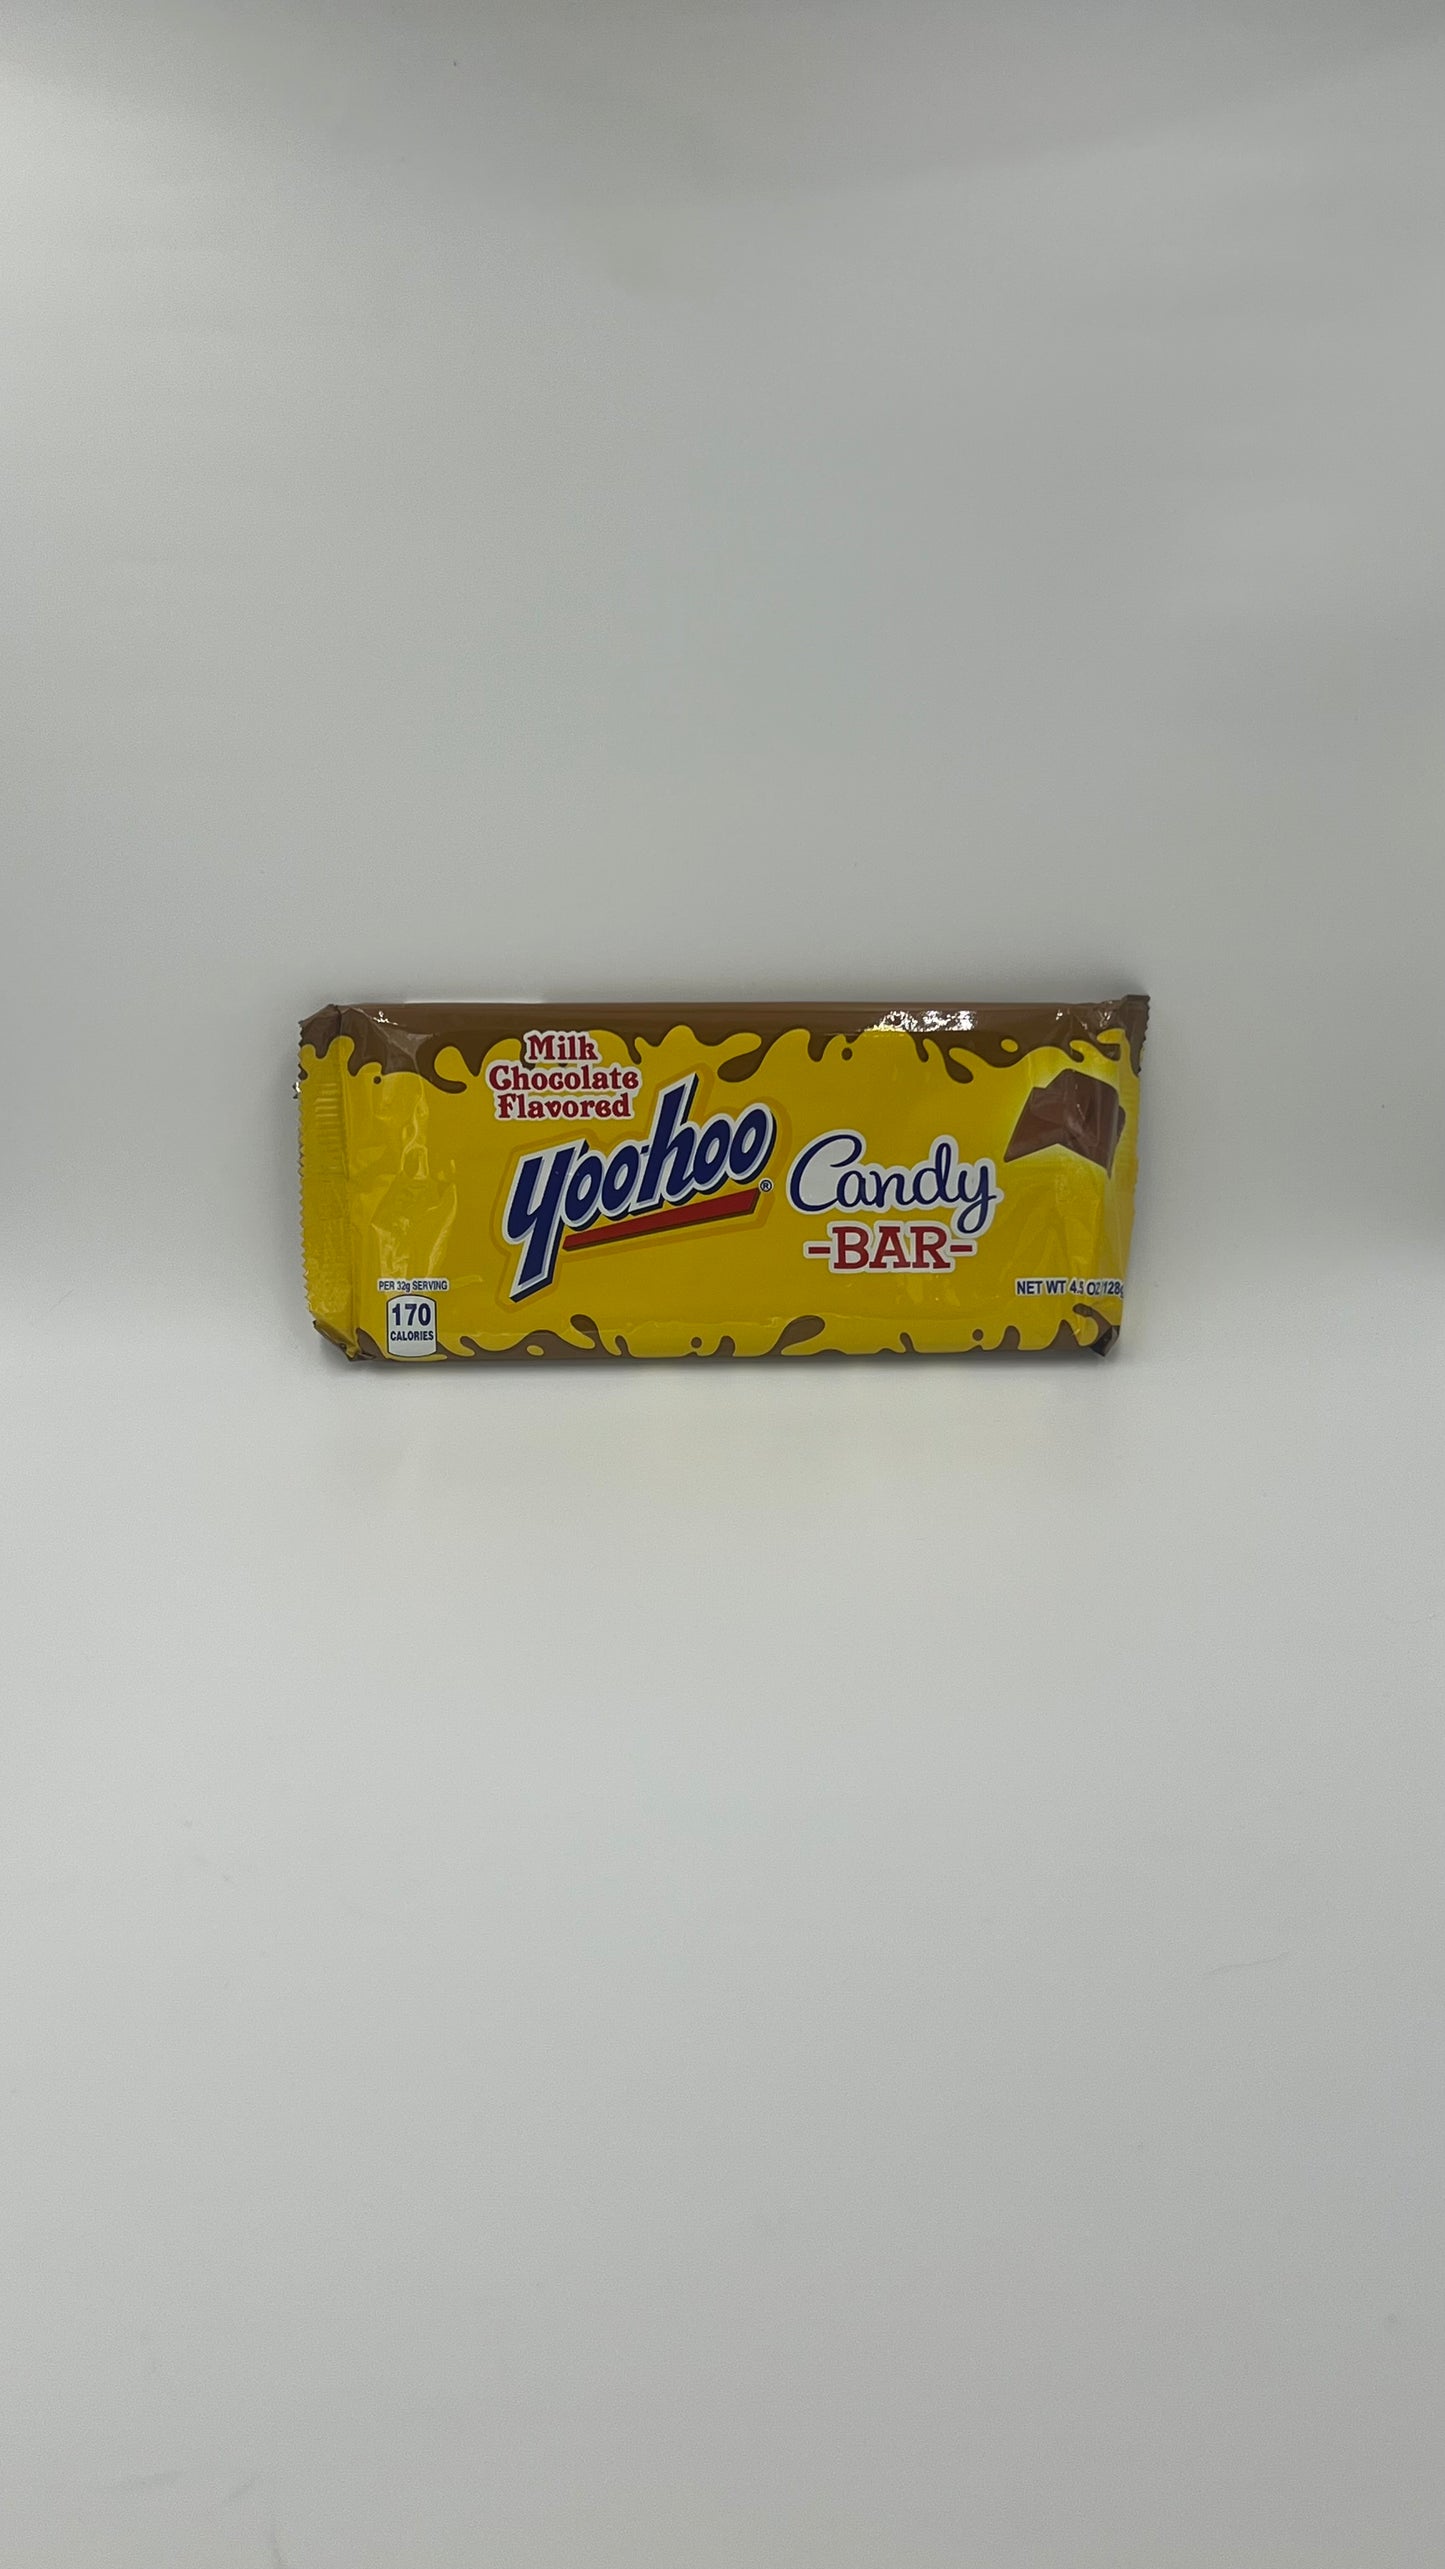 yoohoo Chocolate Bar